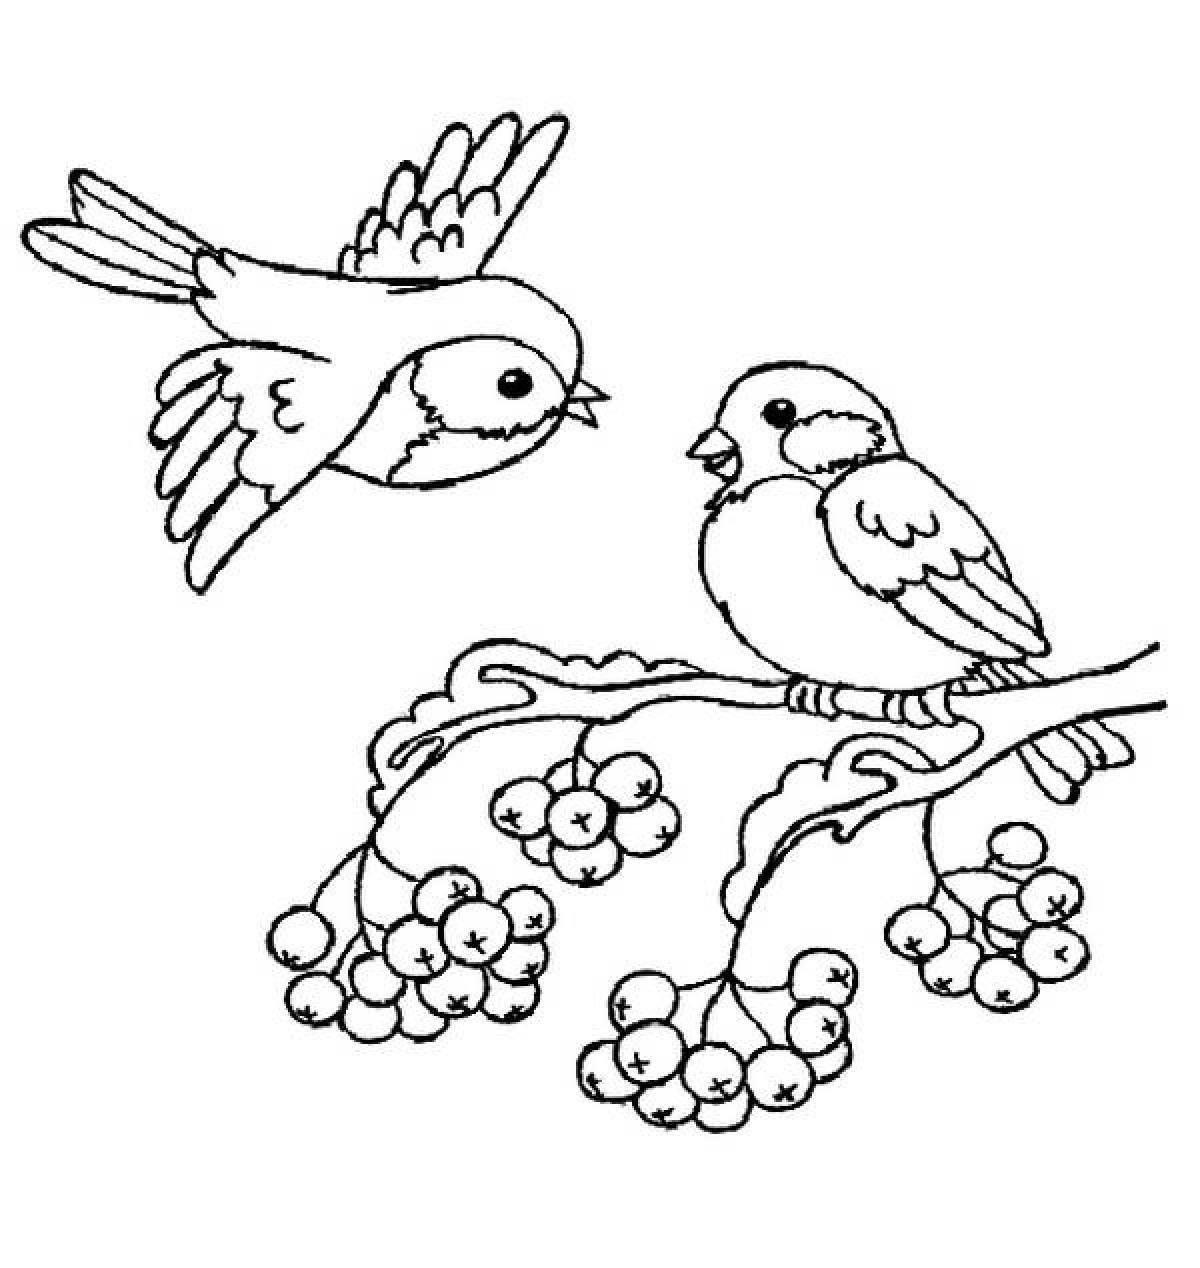 Изысканная раскраска зимующих птиц для детей 4-5 лет